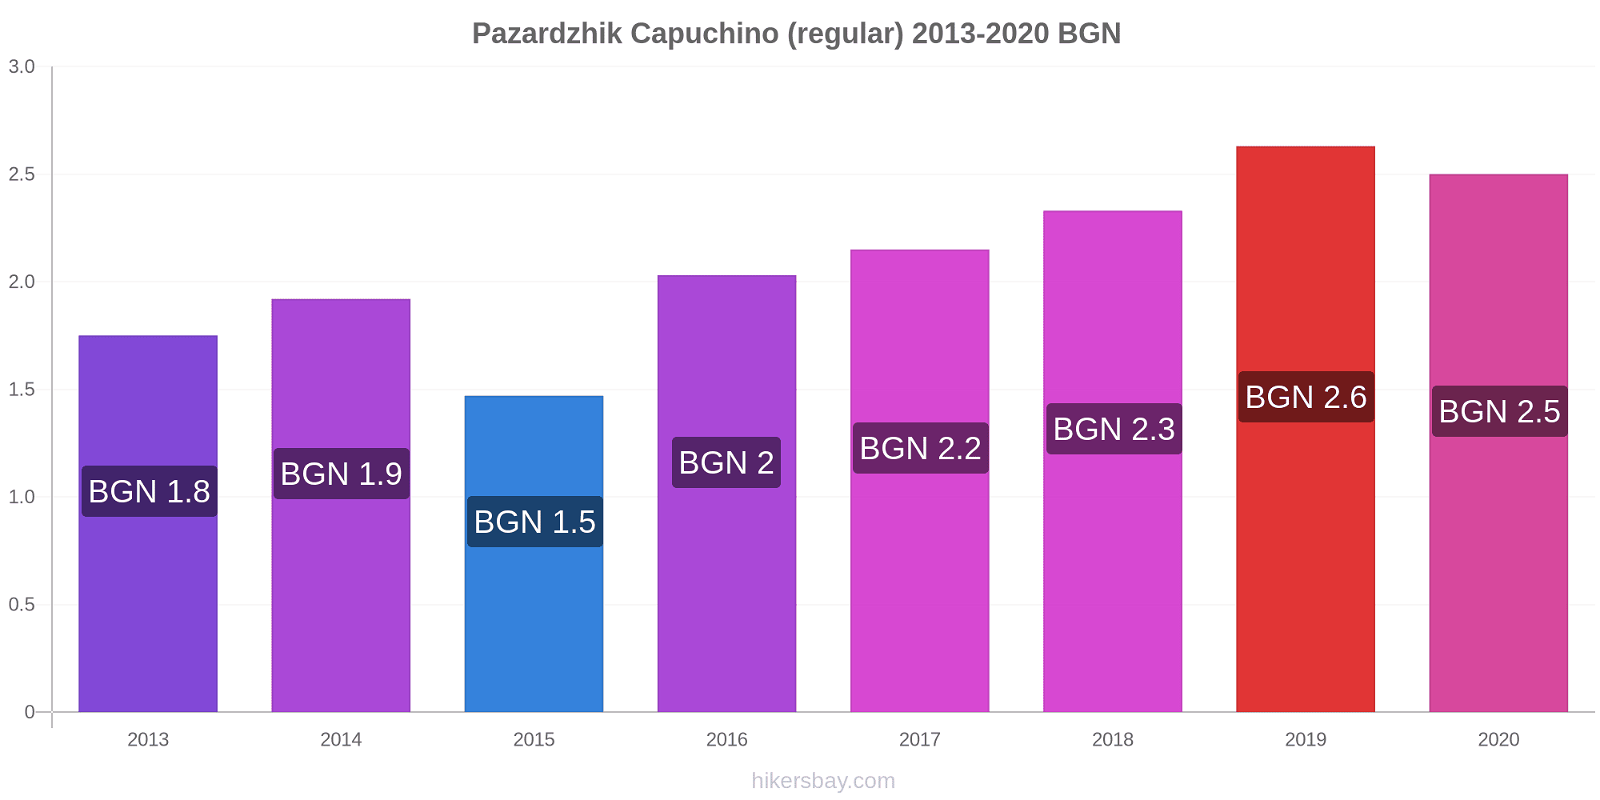 Pazardzhik cambios de precios Capuchino (regular) hikersbay.com